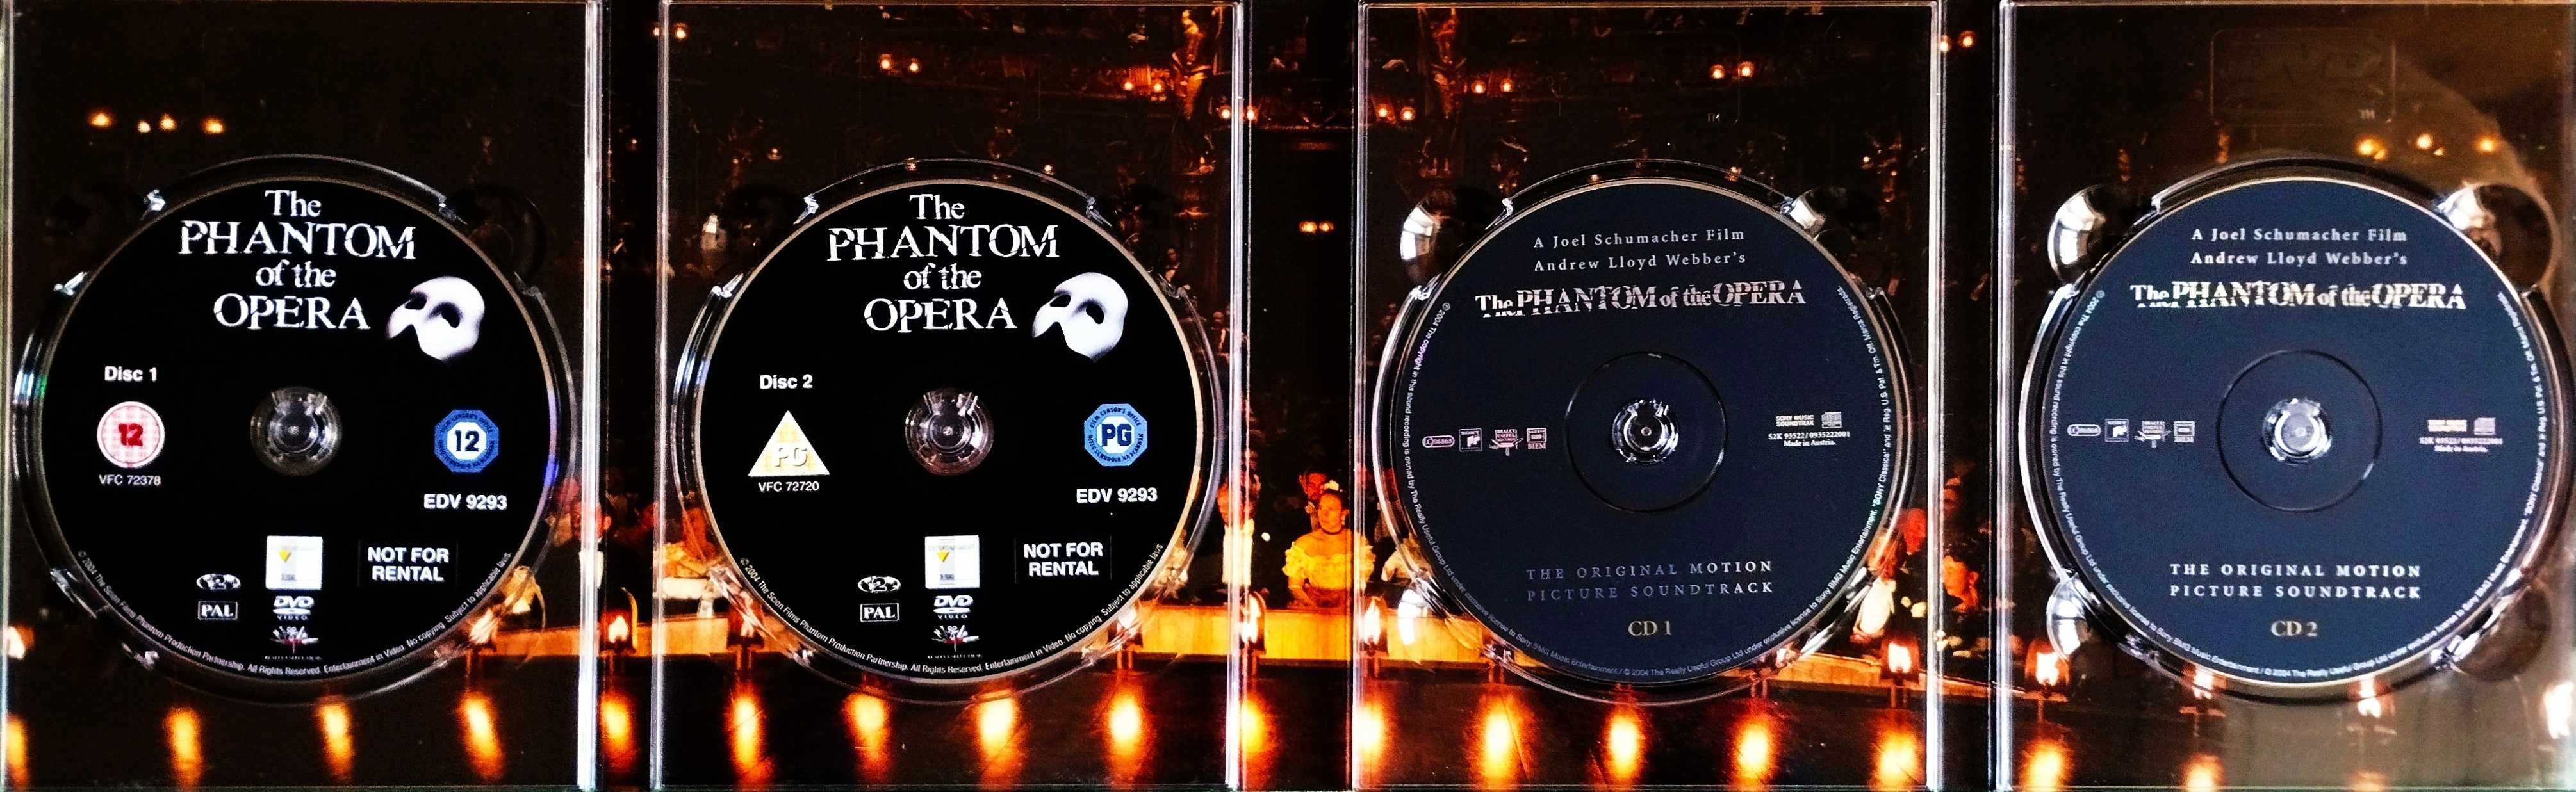 Filmes Especiais - O Fantasma da Ópera (Deluxe Boxset )